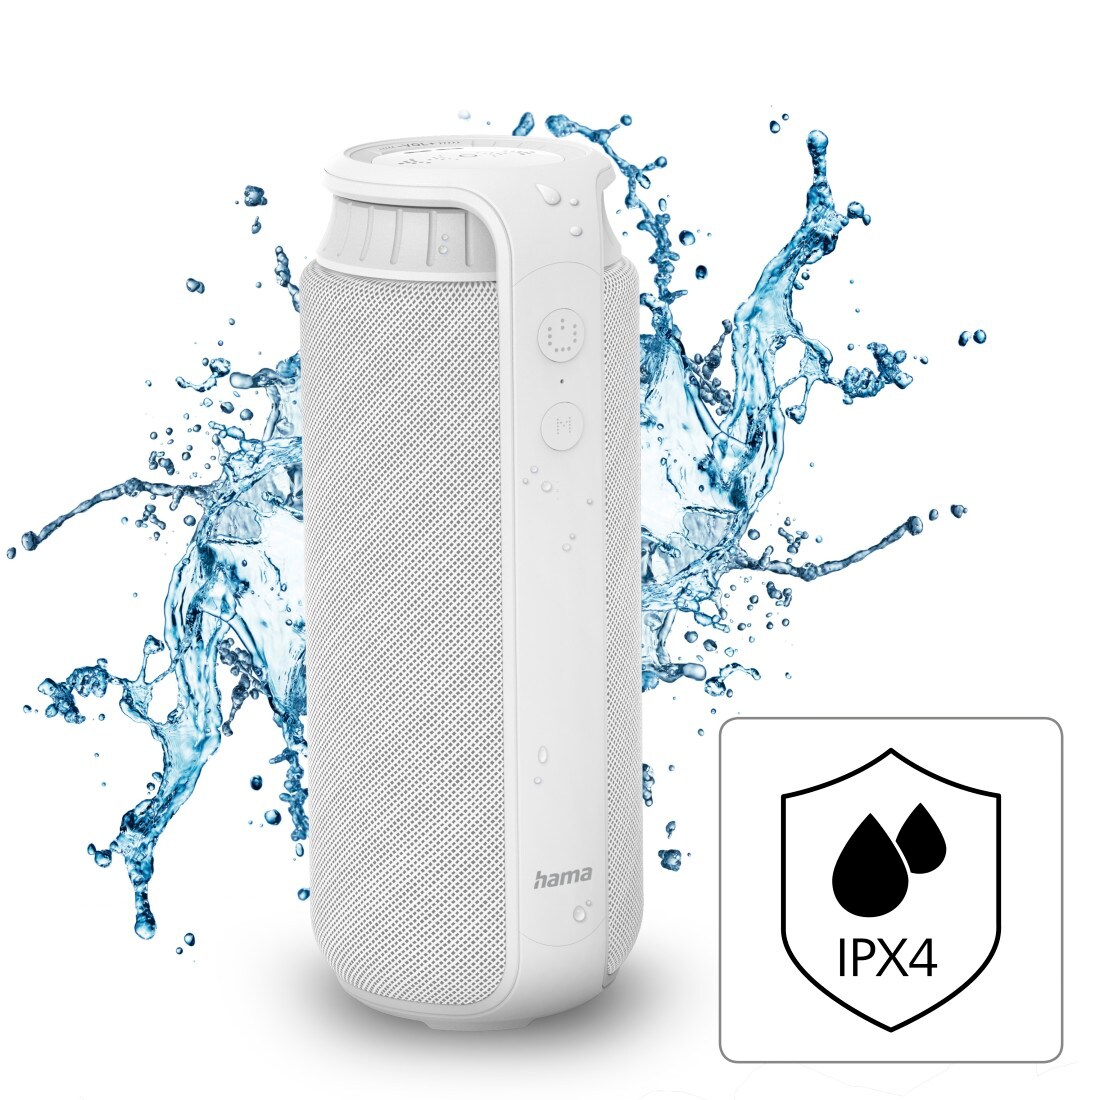 Hama Bluetooth-Lautsprecher Pipe 2.0, spritzwassergeschützt, 24W, Weiß ++  Cyberport